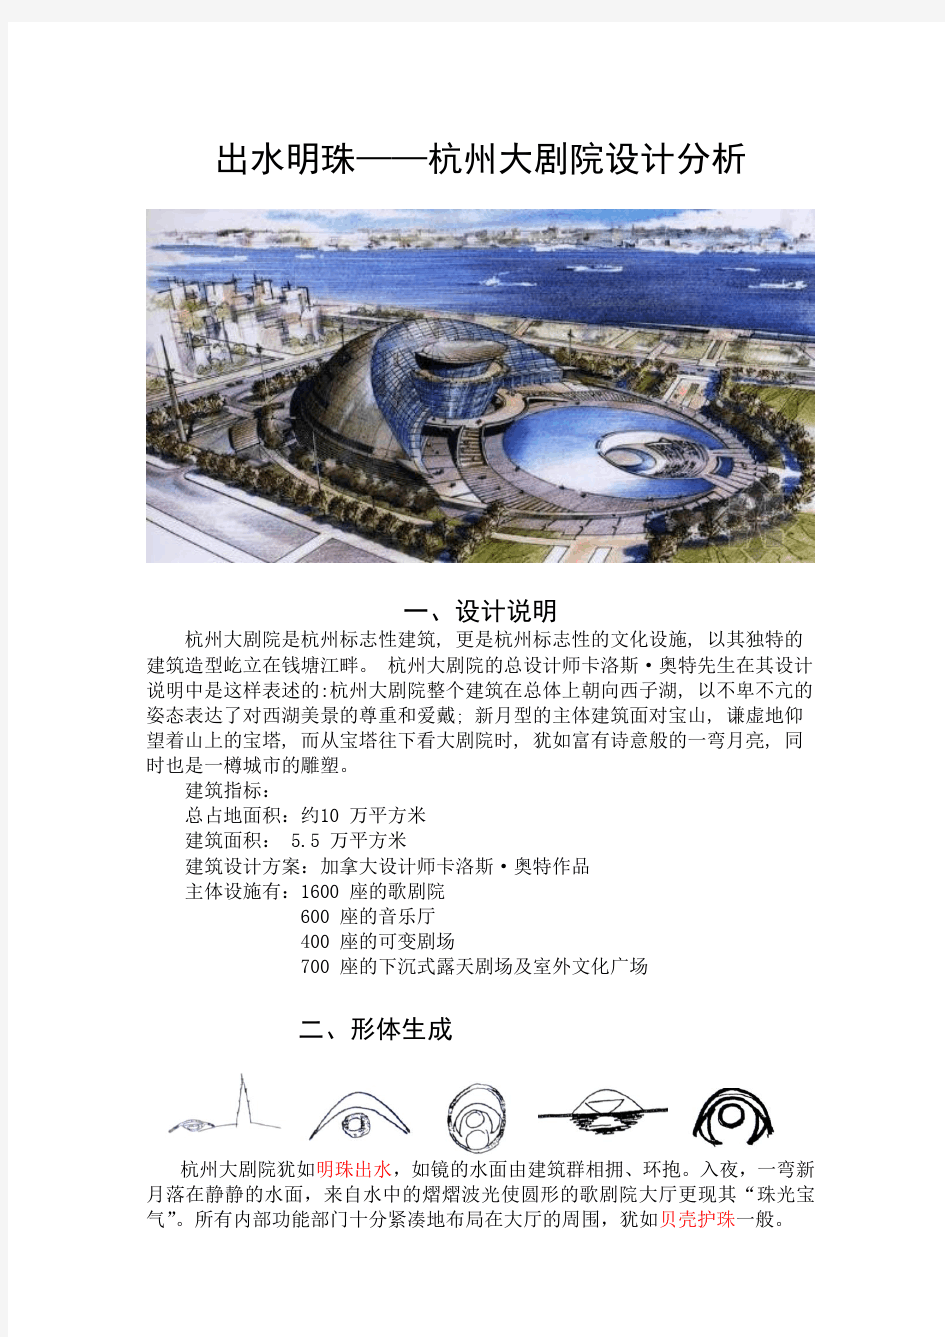 建筑解析杭州大剧院设计